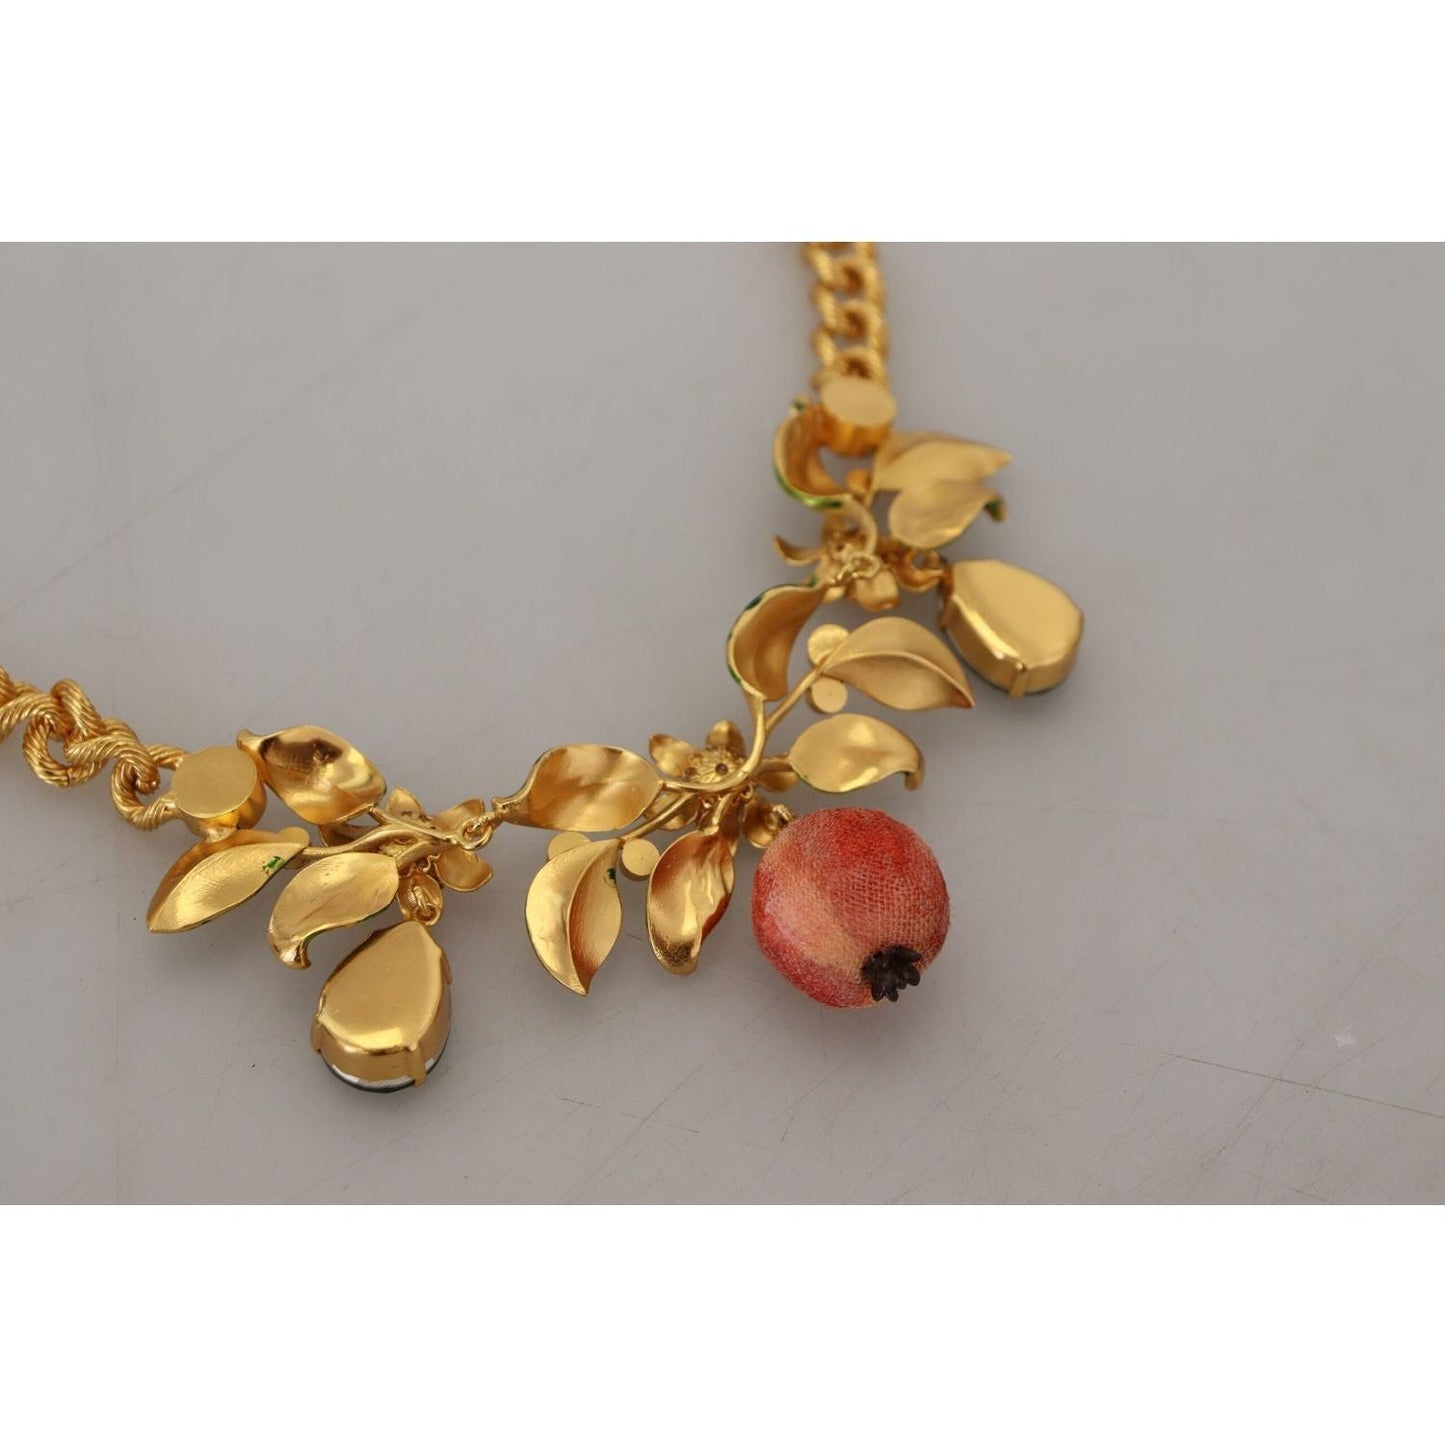 Dolce & Gabbana Elegant Floral Fruit Motif Gold Necklace gold-brass-crystal-logo-fruit-floral-statement-necklace IMG_7480-1-scaled-7da84575-5ef.jpg